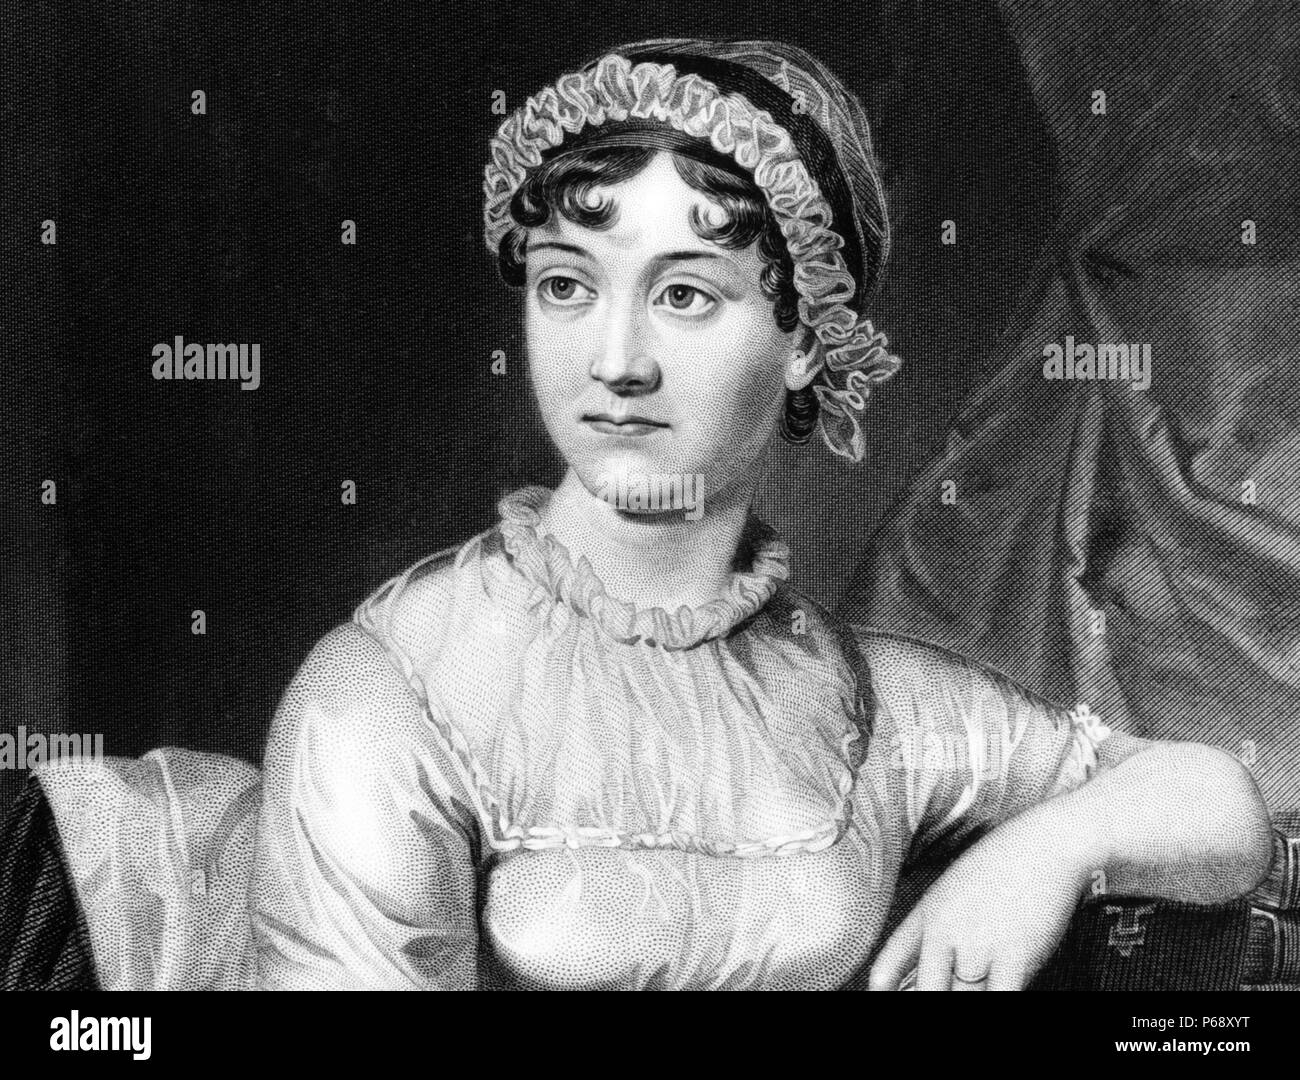 Porträt von Jane Austen (1775-1817), englischer Schriftsteller, deren Werke oder romantische Fiktion. Datiert 1810 Stockfoto